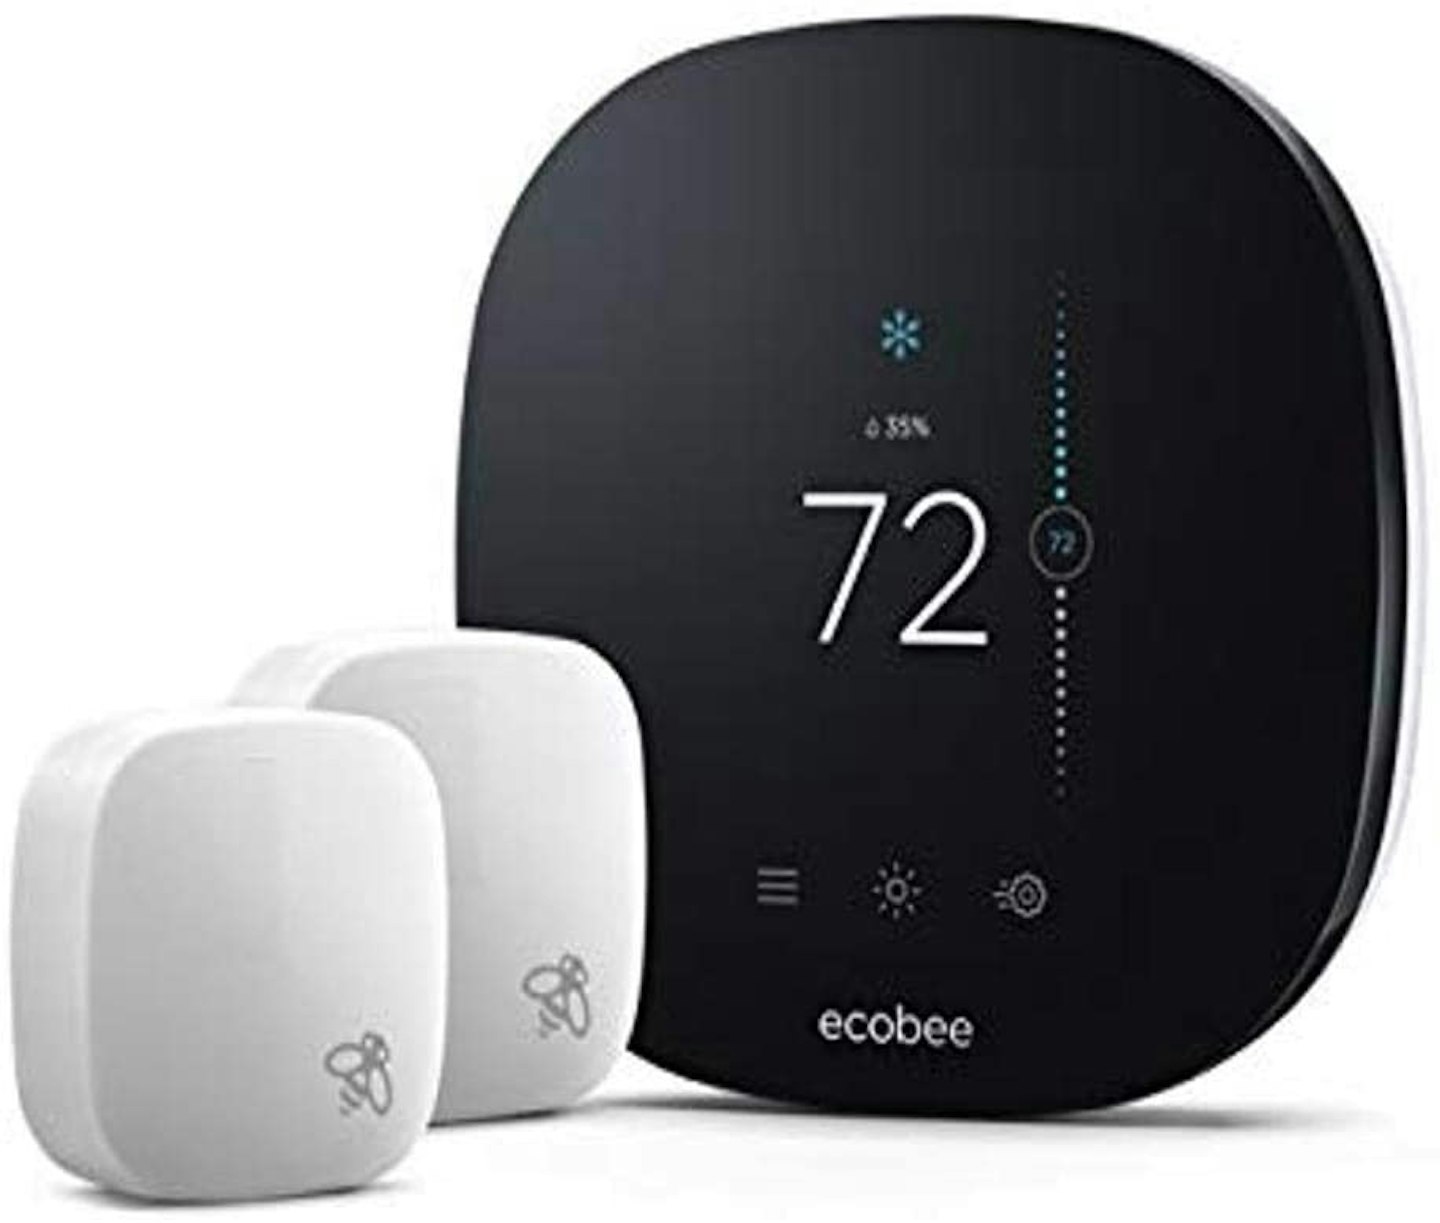 Ecobee ecobee3 lite Smart Thermostat with Room Sensors